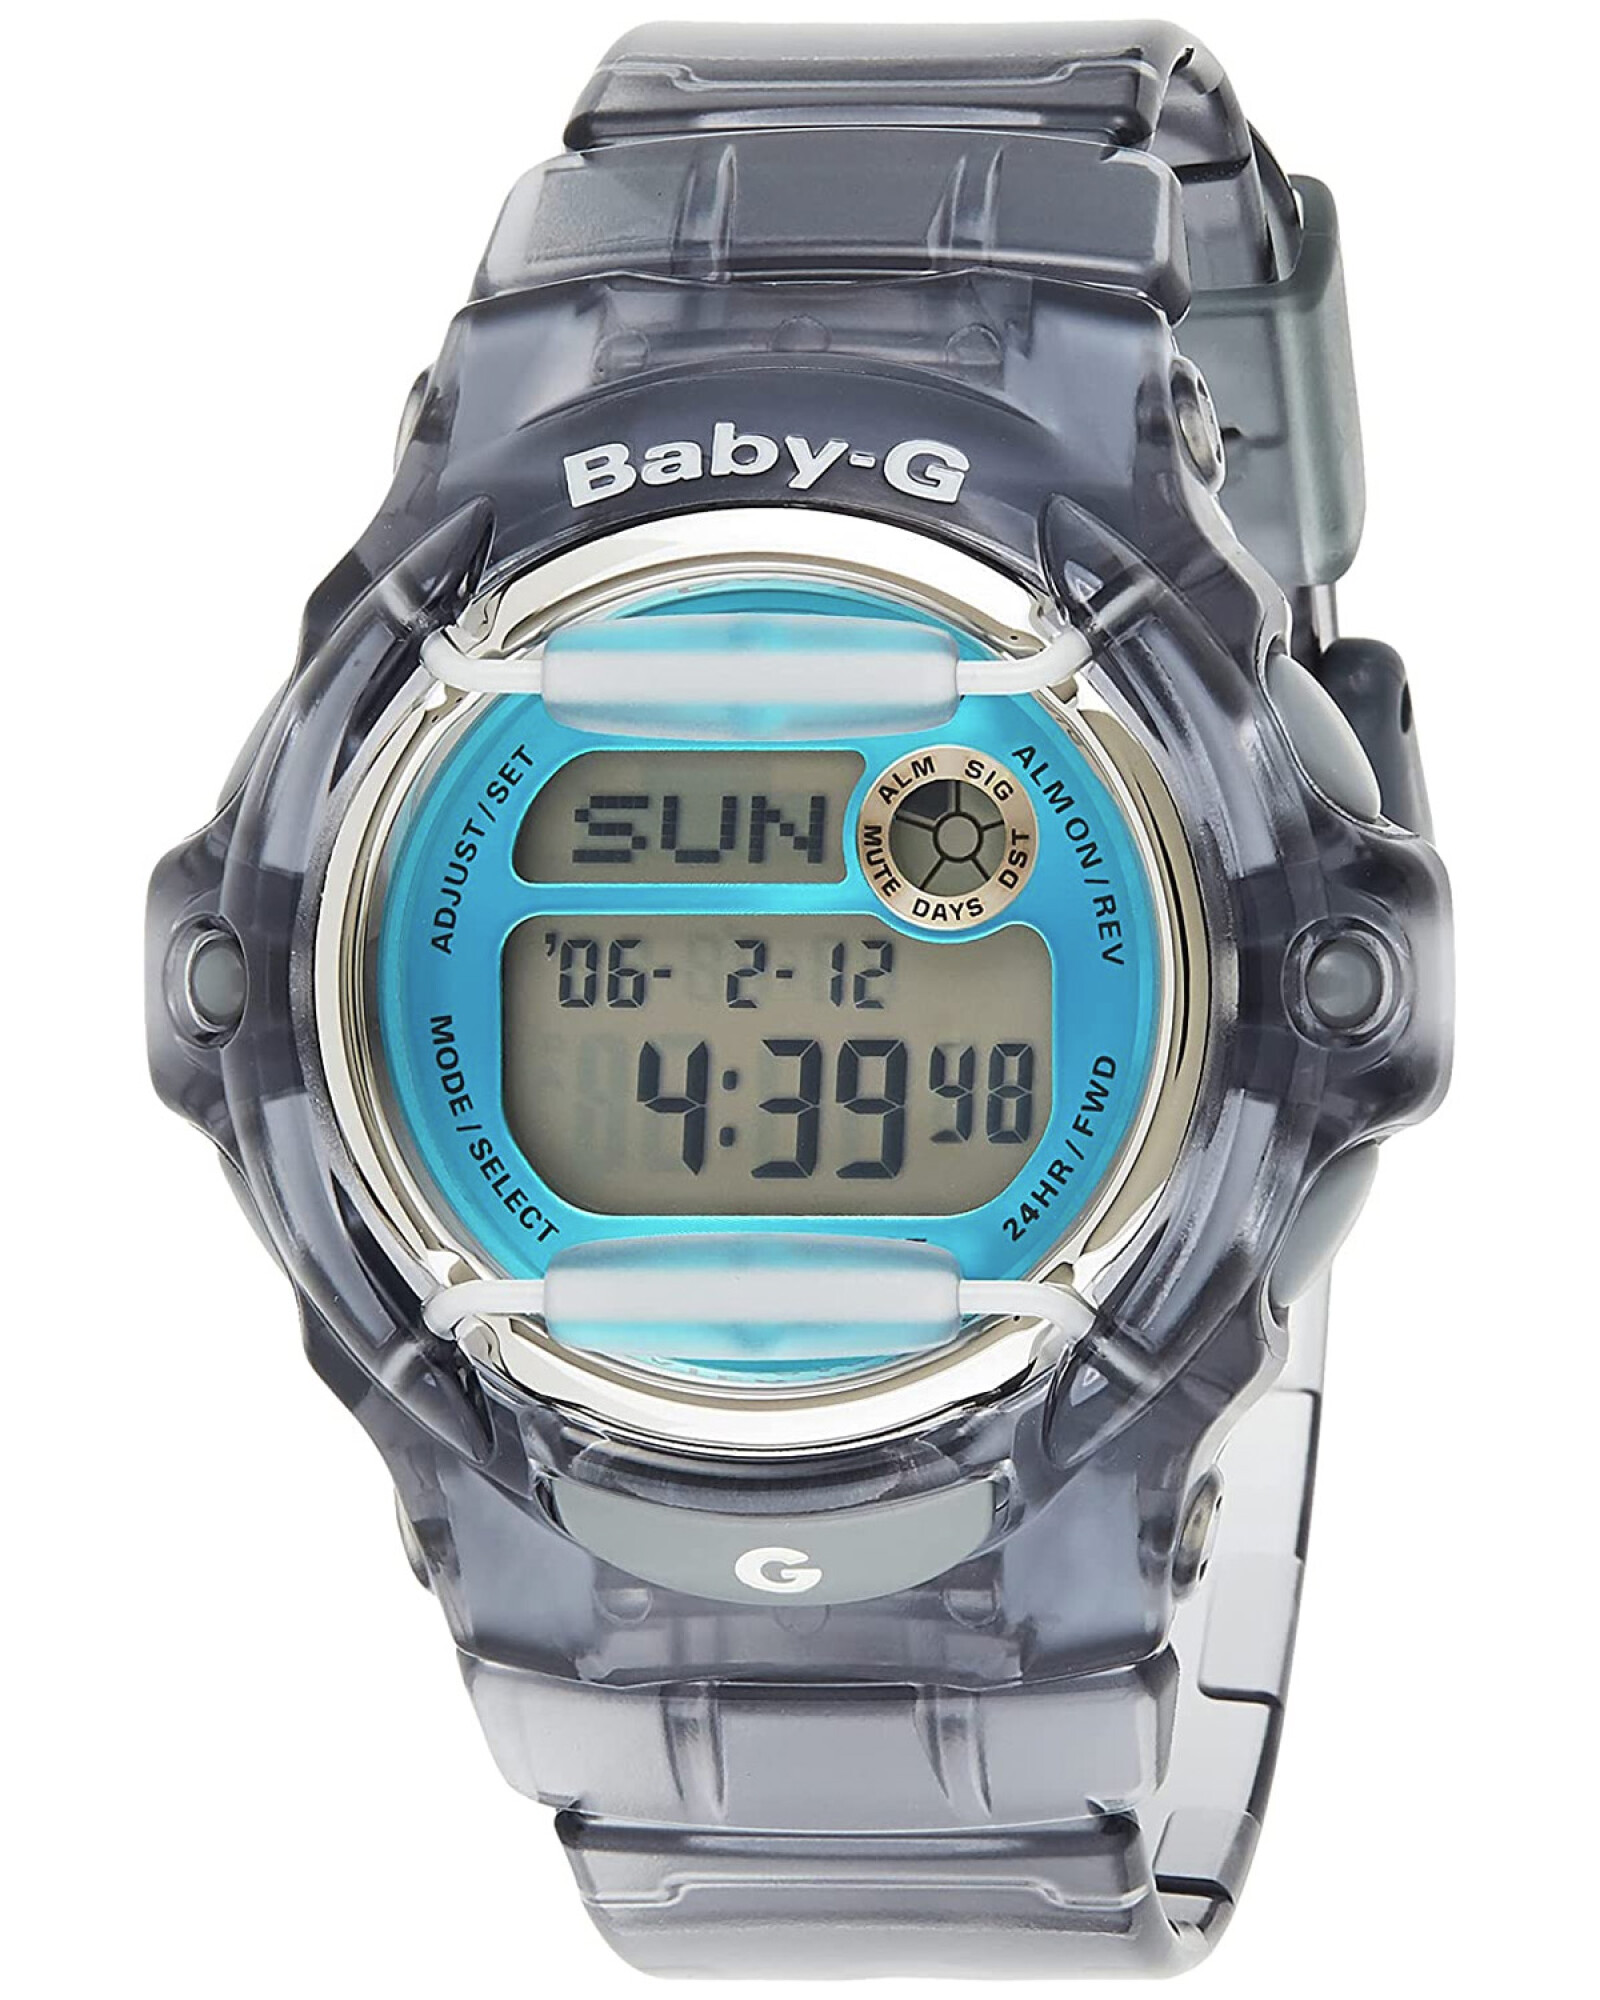 Oiritaly Reloj - Quarzo - Niño - Casio - BA-110DC-2A2ER - Baby-G - Relojes